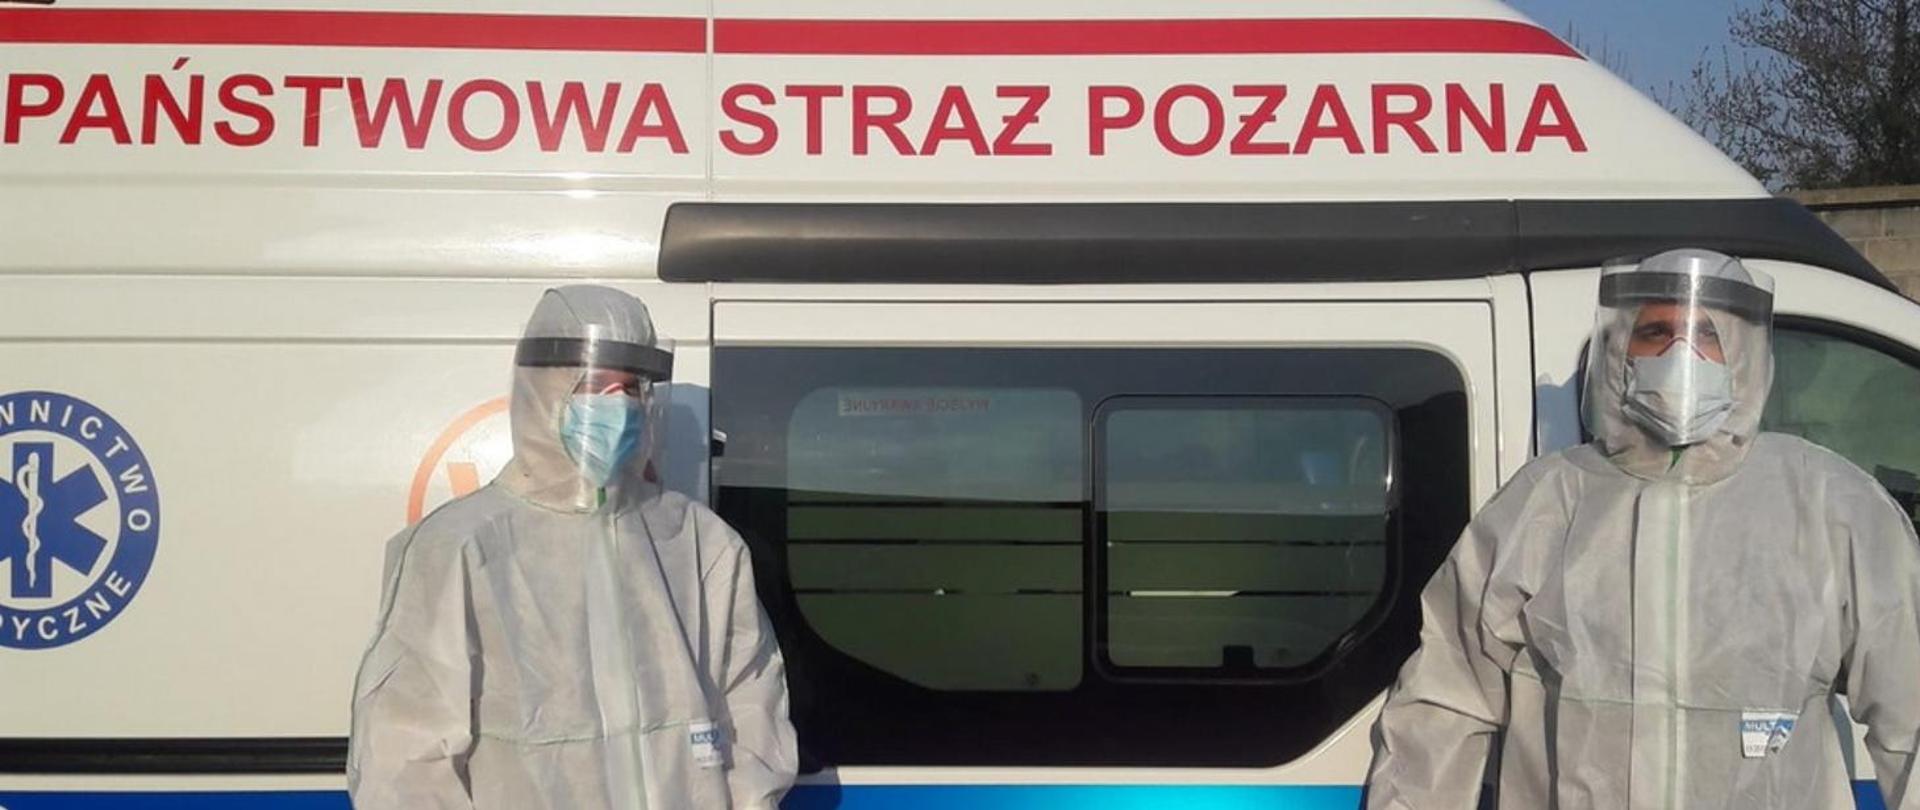 15 wielkopolskich strażaków, w tym strażacy z Pleszewa, zostało oddelegowanych do szpitala covidowego.